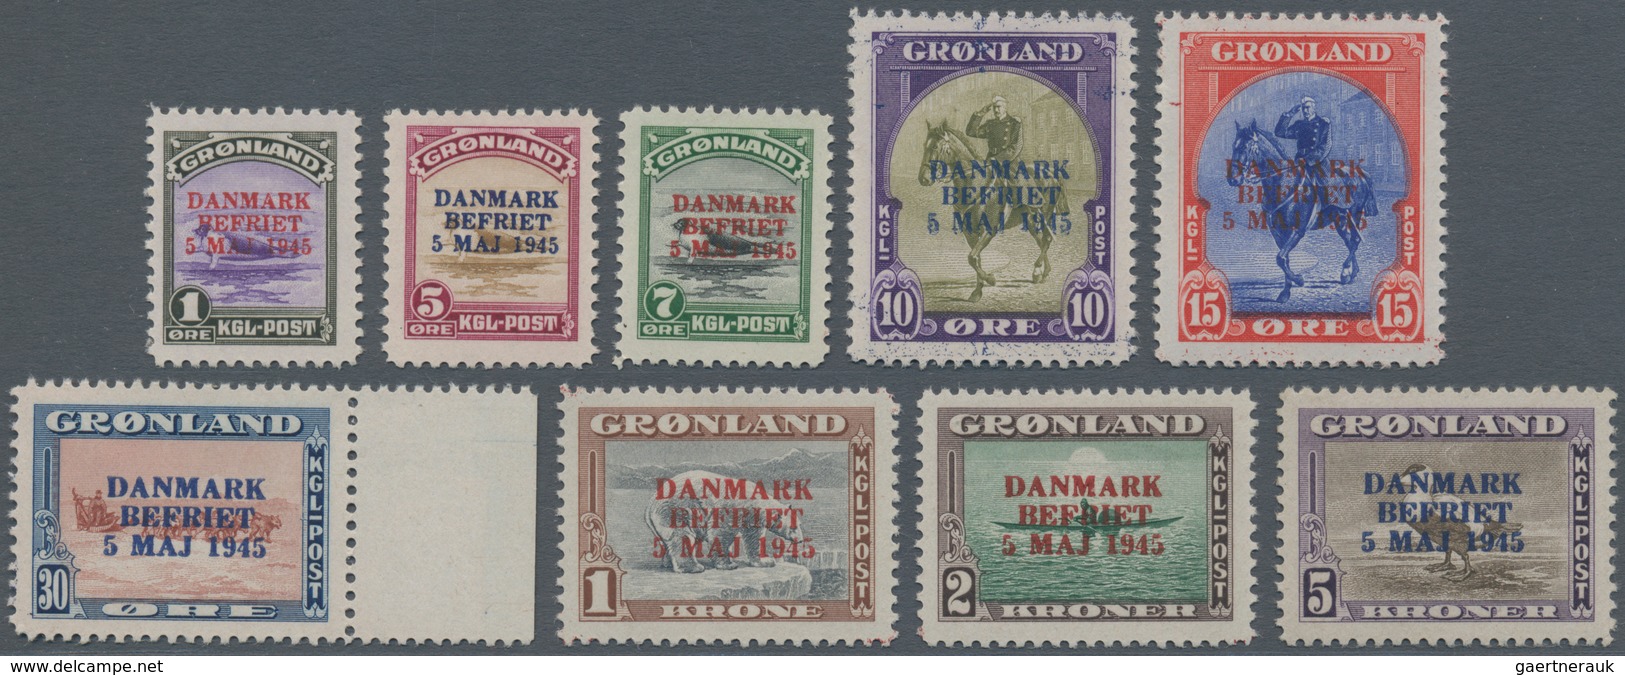 Dänemark - Grönland: 1945, Overprints "DANMARK BEFRIET", Complete Set Of Nine Values, Unmounted Mint - Briefe U. Dokumente